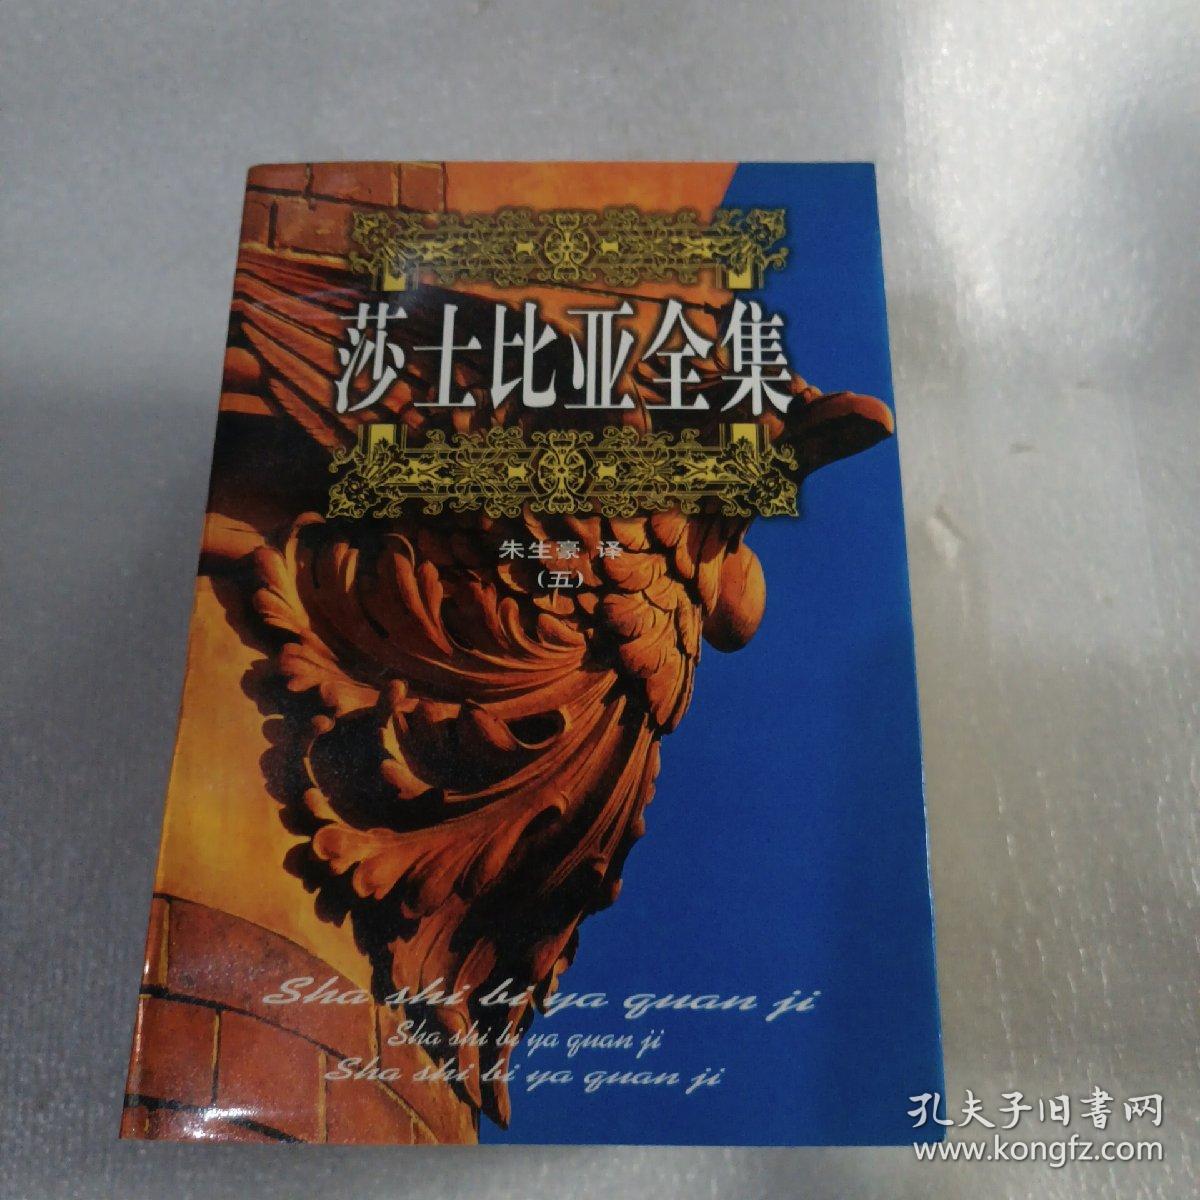 莎士比亚全集(全五册)中国电影出版社、